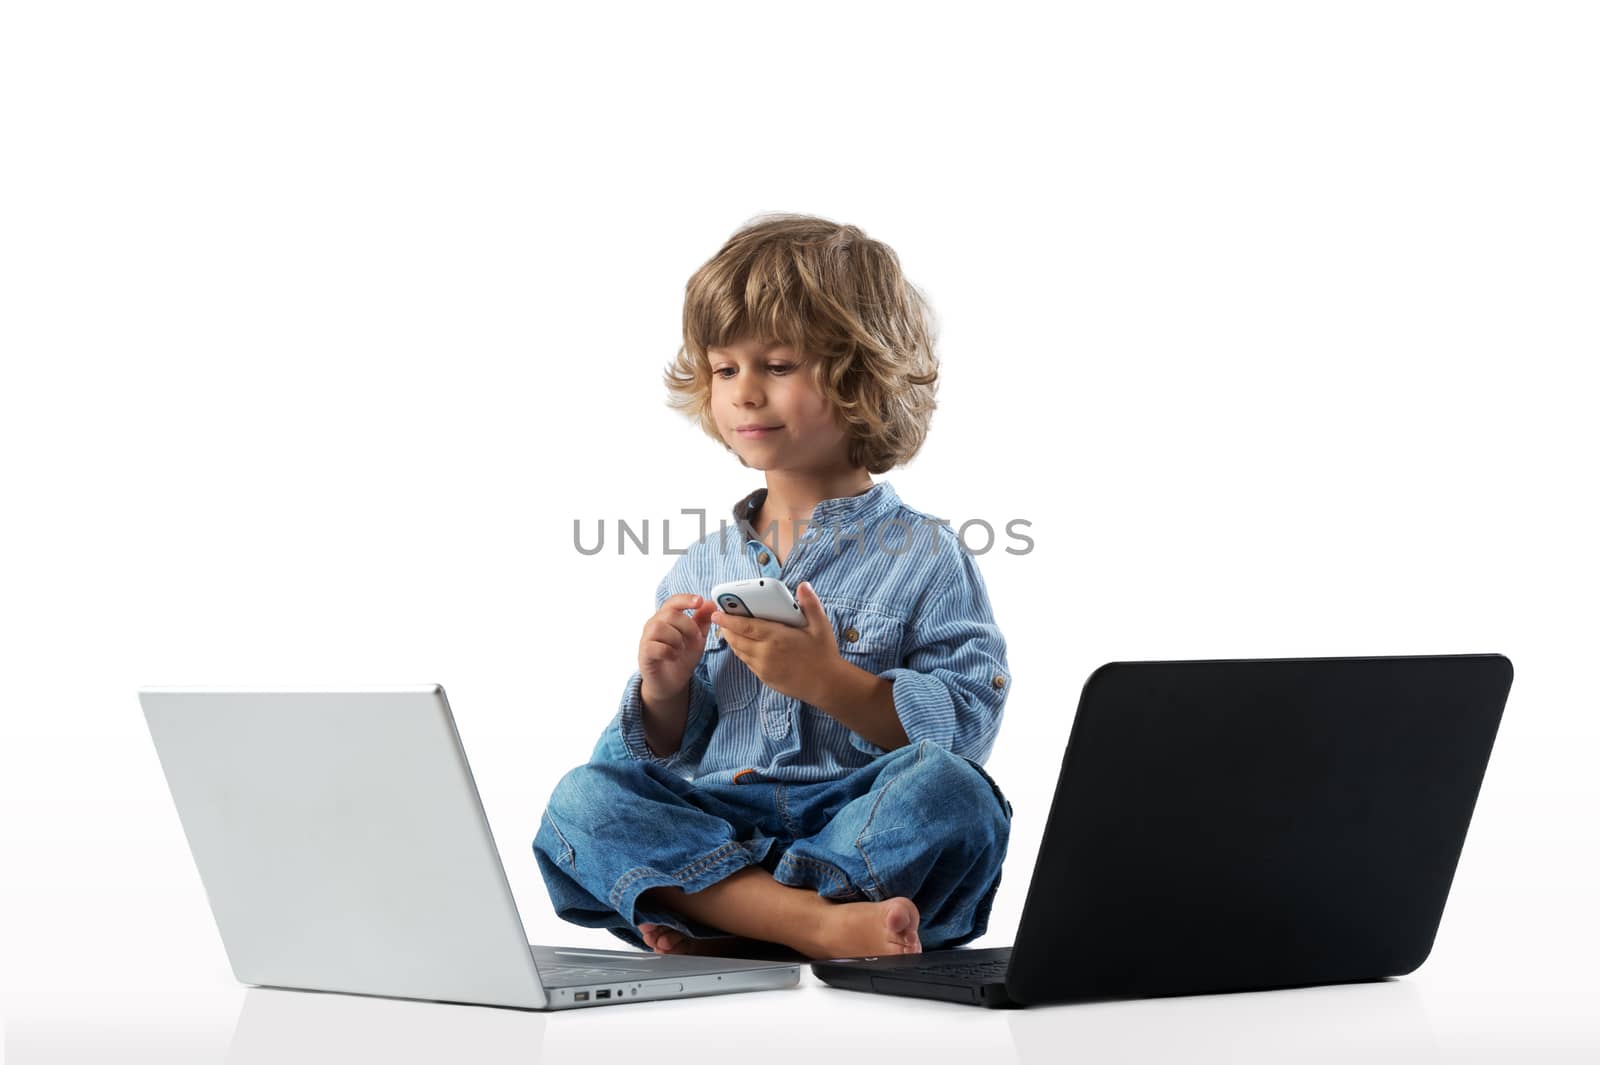 Boy with laptops by kaliantye